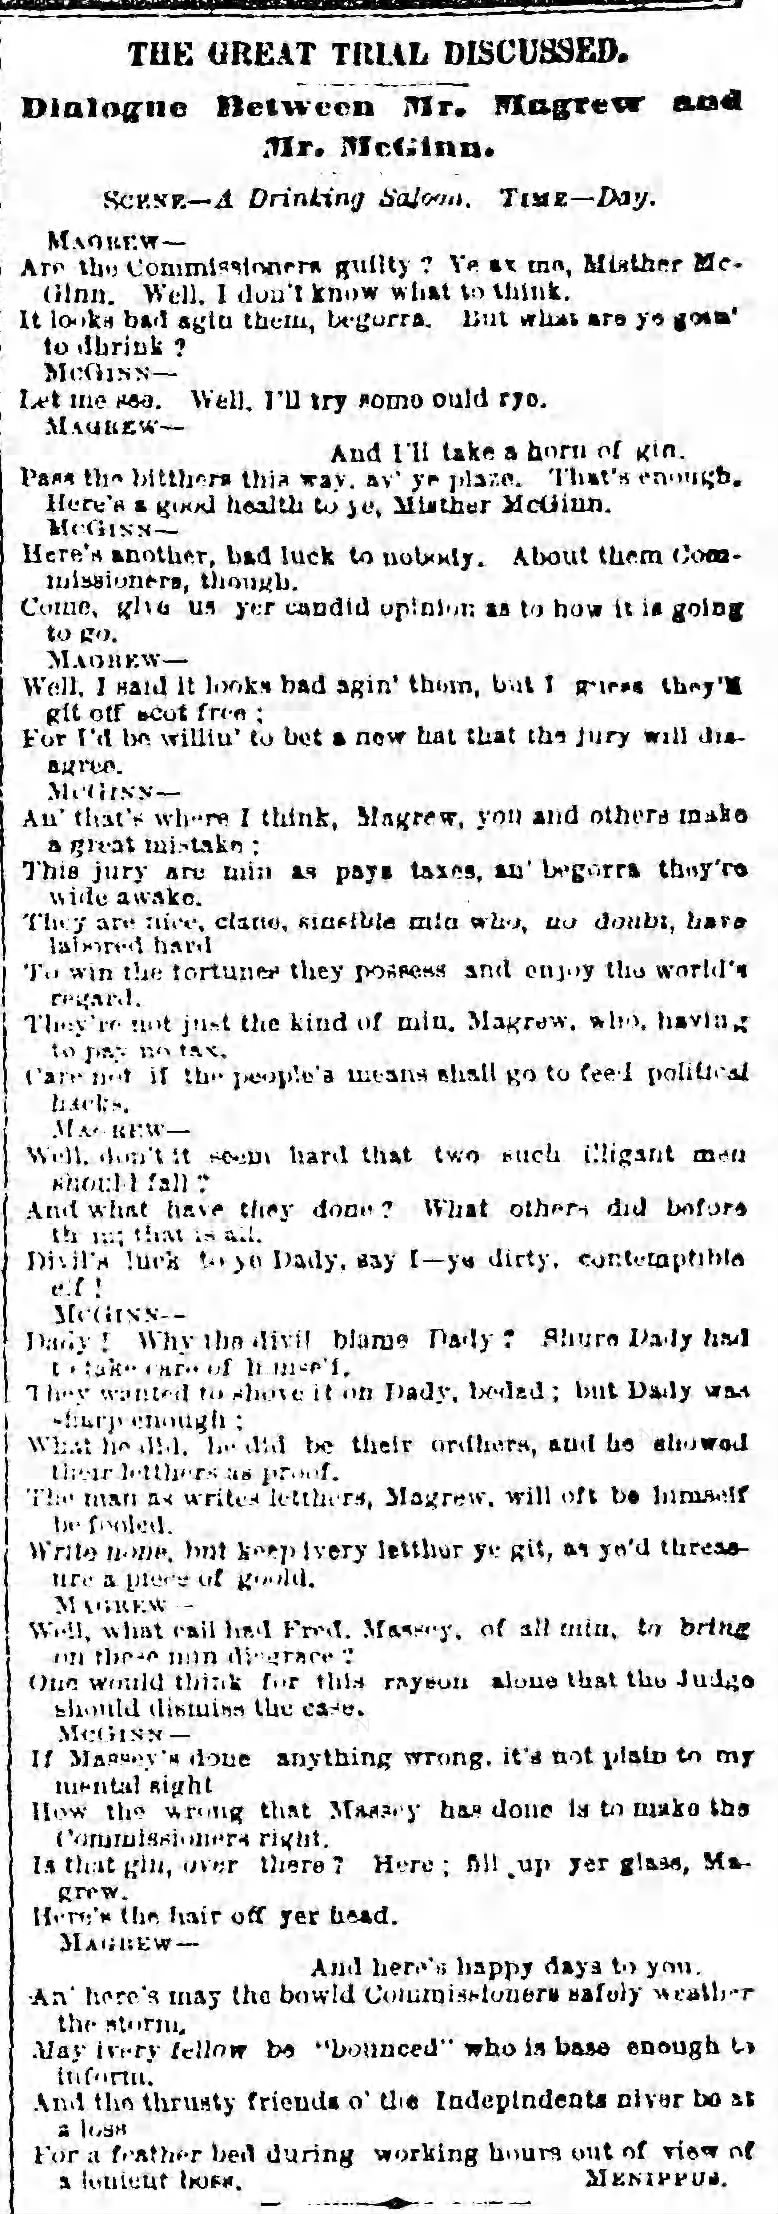 Sunday, April 27, 1879 - Page 1